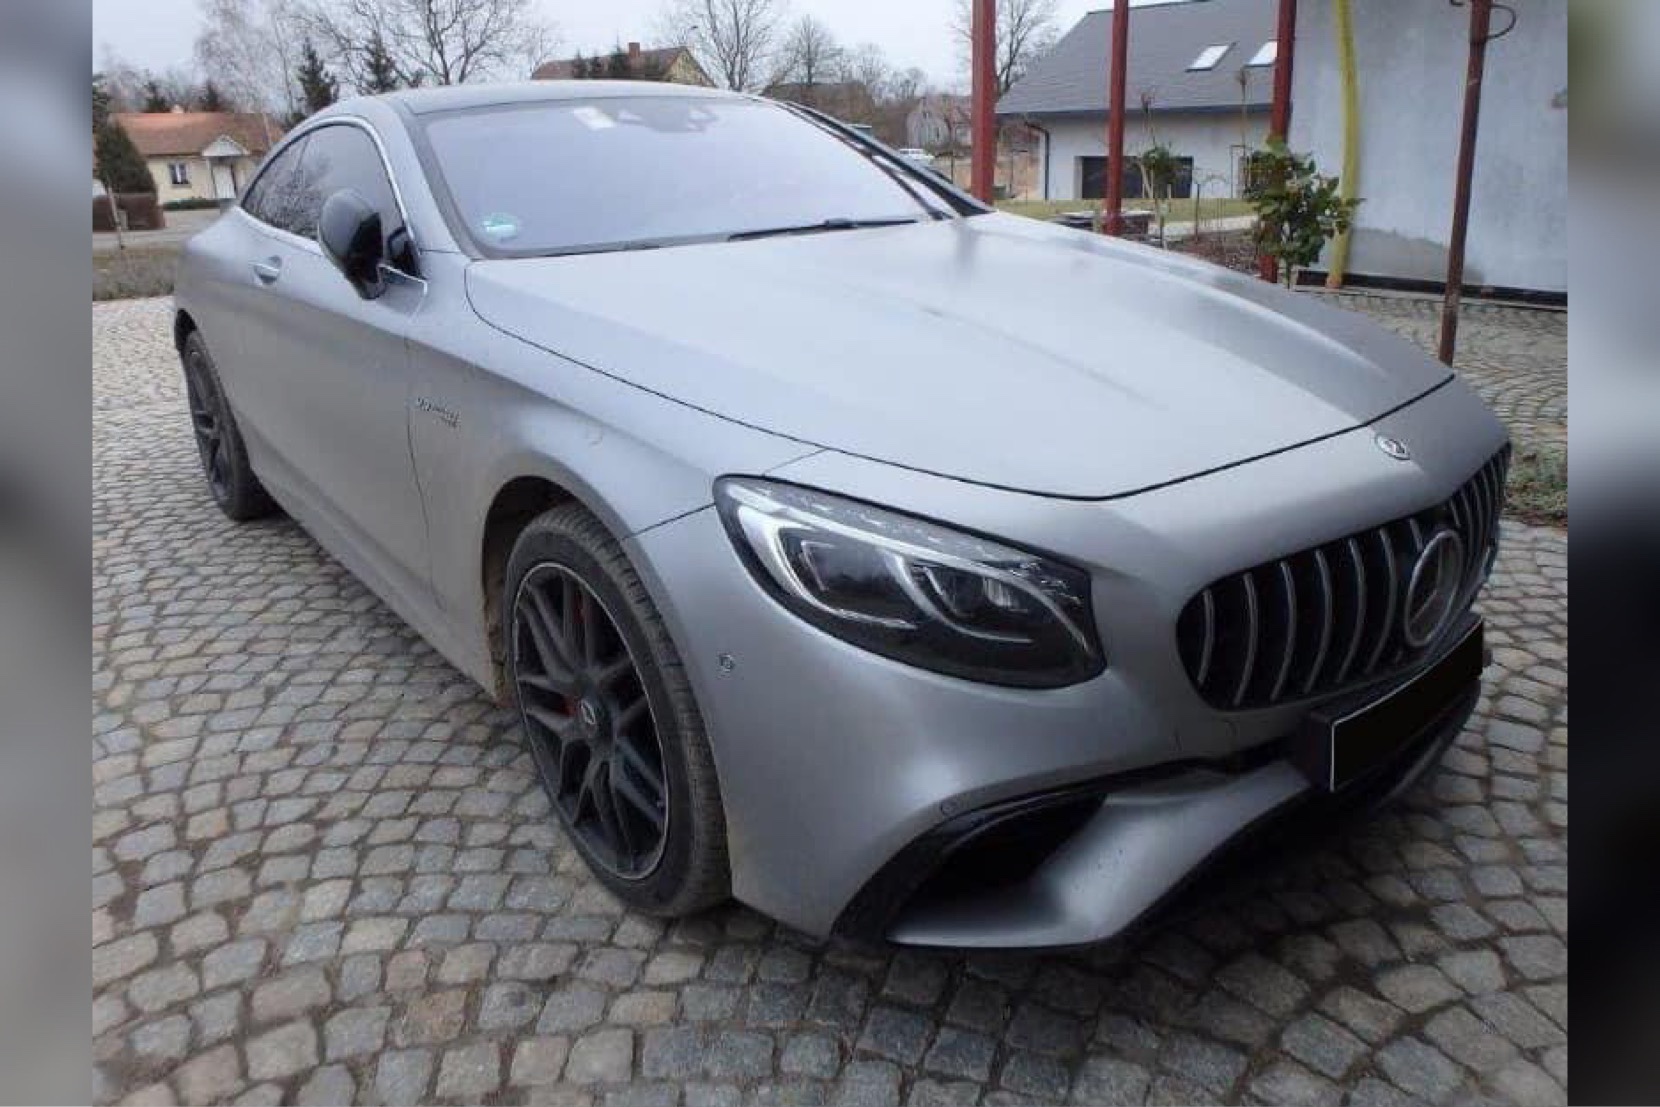  Skradziono Mercedesa S63 AMG – Wyznaczono nagrodę 20.000 zł